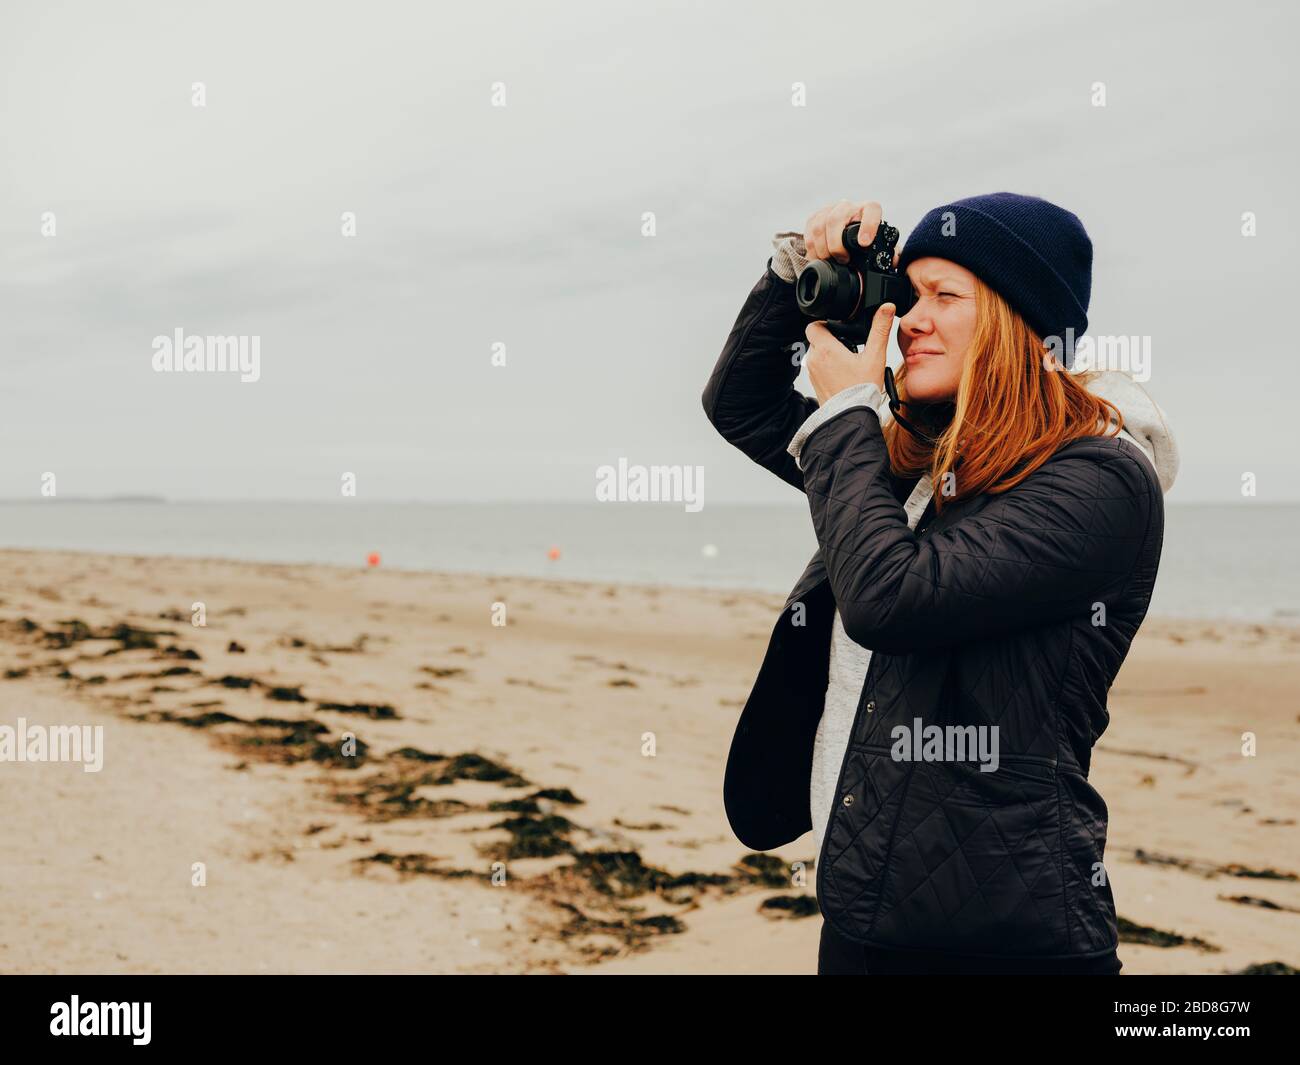 Woman taking photos on beach in Scotland Stock Photo